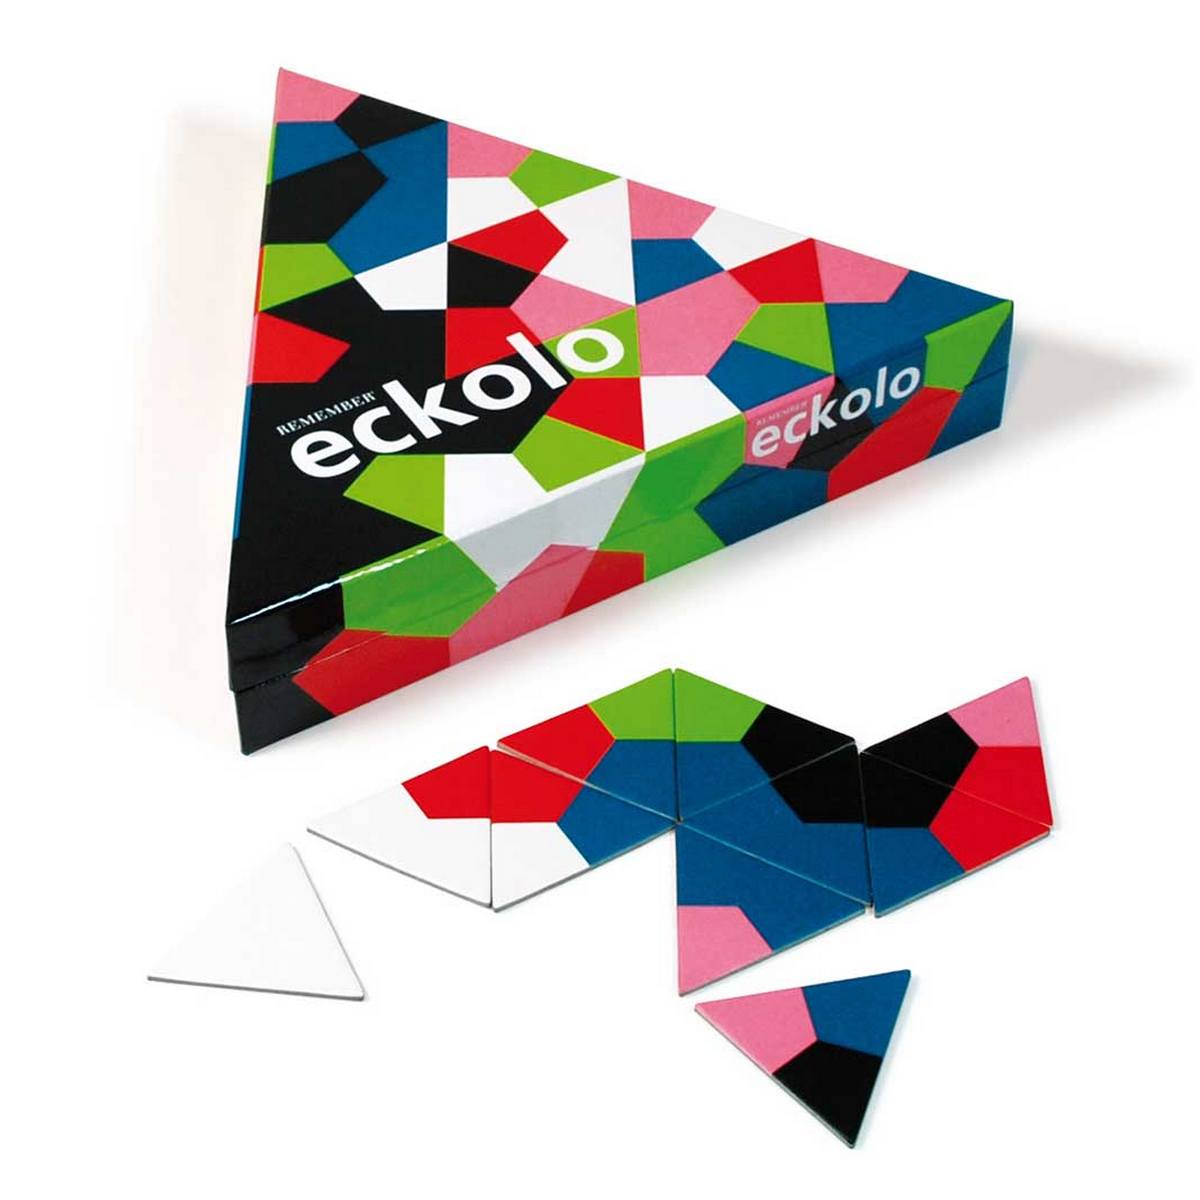 remember jeu eckolo un jeu pour ados une idee cadeau chez ugo et lea  (4)